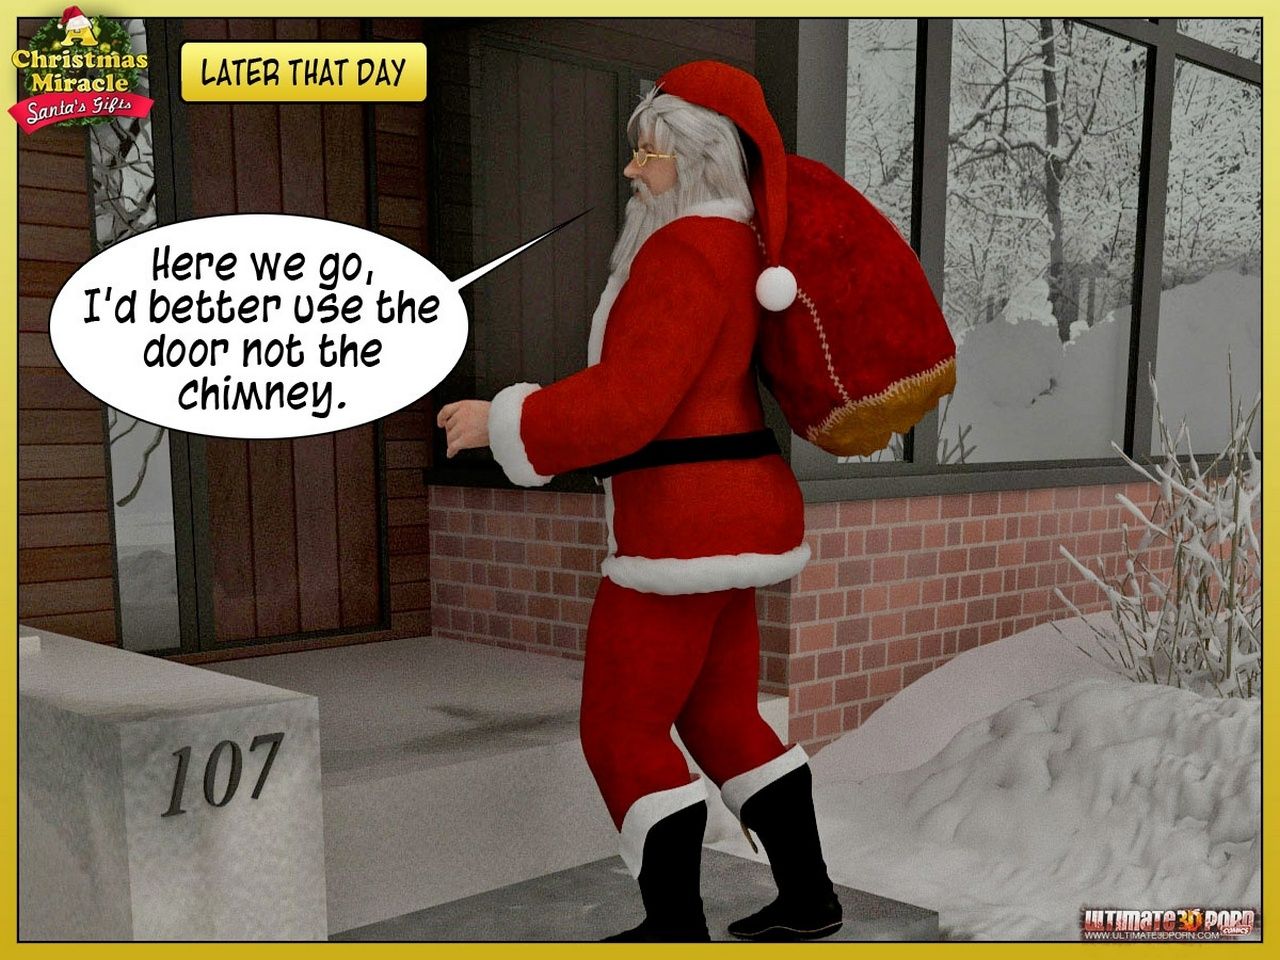 a クリスマス 奇跡 2 - Santas ギフト